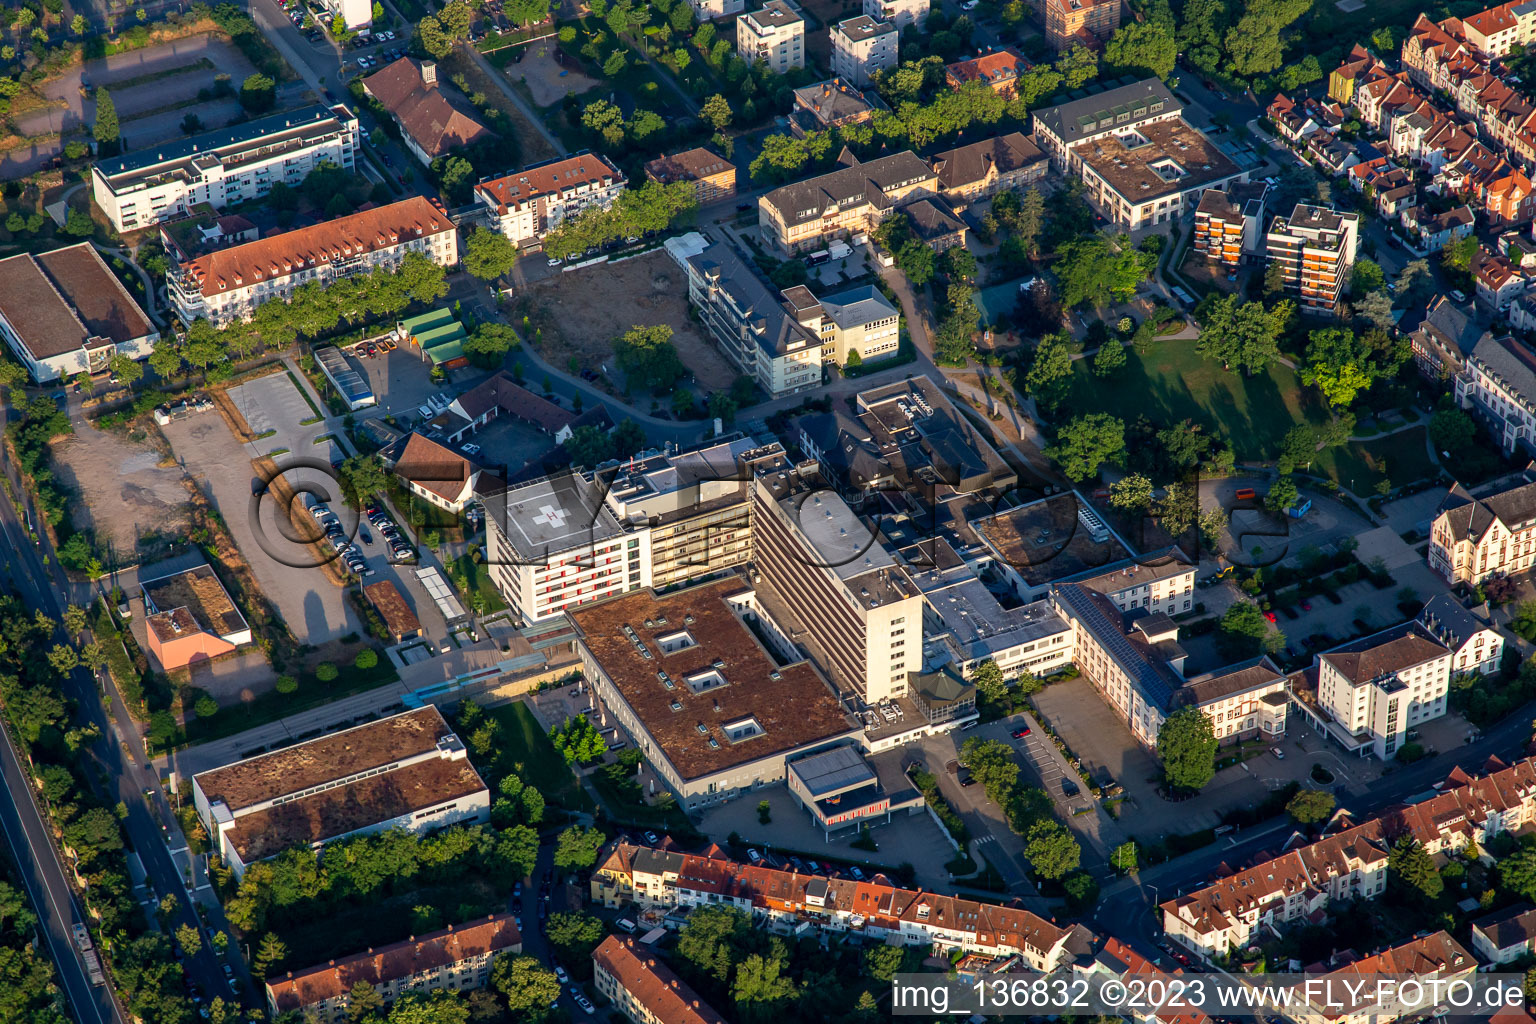 Vue aérienne de Hôpital de la Fondation Diakonissen Speyer dans le parc Diakonissen à Speyer dans le département Rhénanie-Palatinat, Allemagne